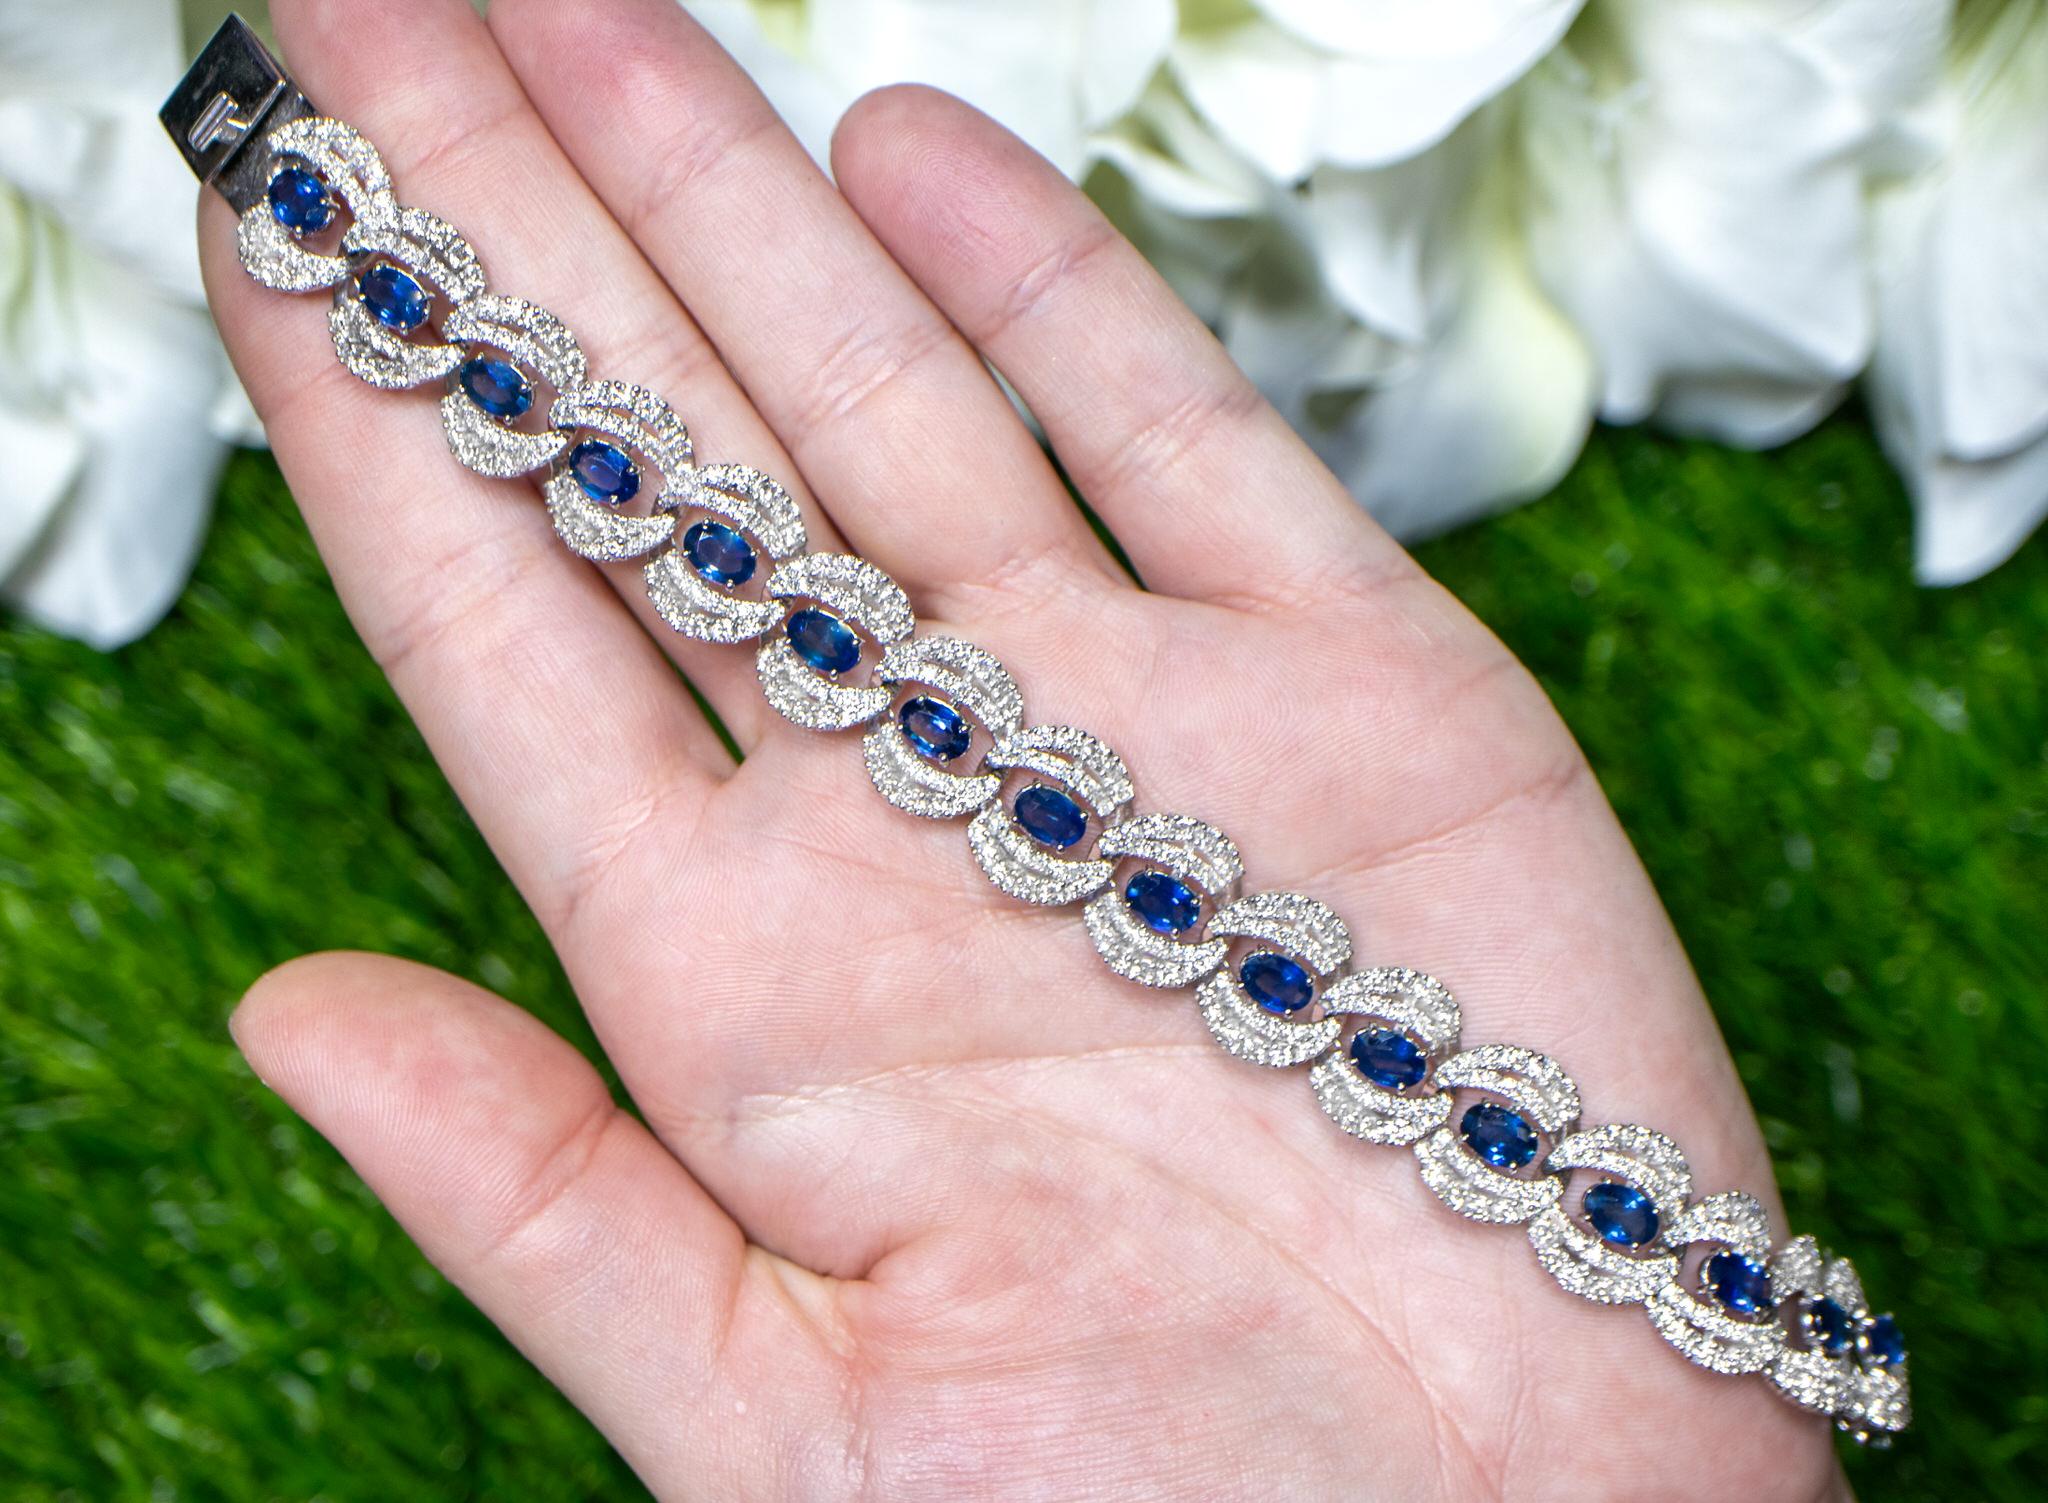 Il est accompagné d'une évaluation gemmologique par la GIA (GG/AJP).
Toutes les pierres précieuses sont naturelles
Saphirs bleus = 3,90 carats
Diamants = 6,90 carats
Métal : Or blanc 18K
Longueur : 7,15 pouces
Largeur : 0,59 pouces